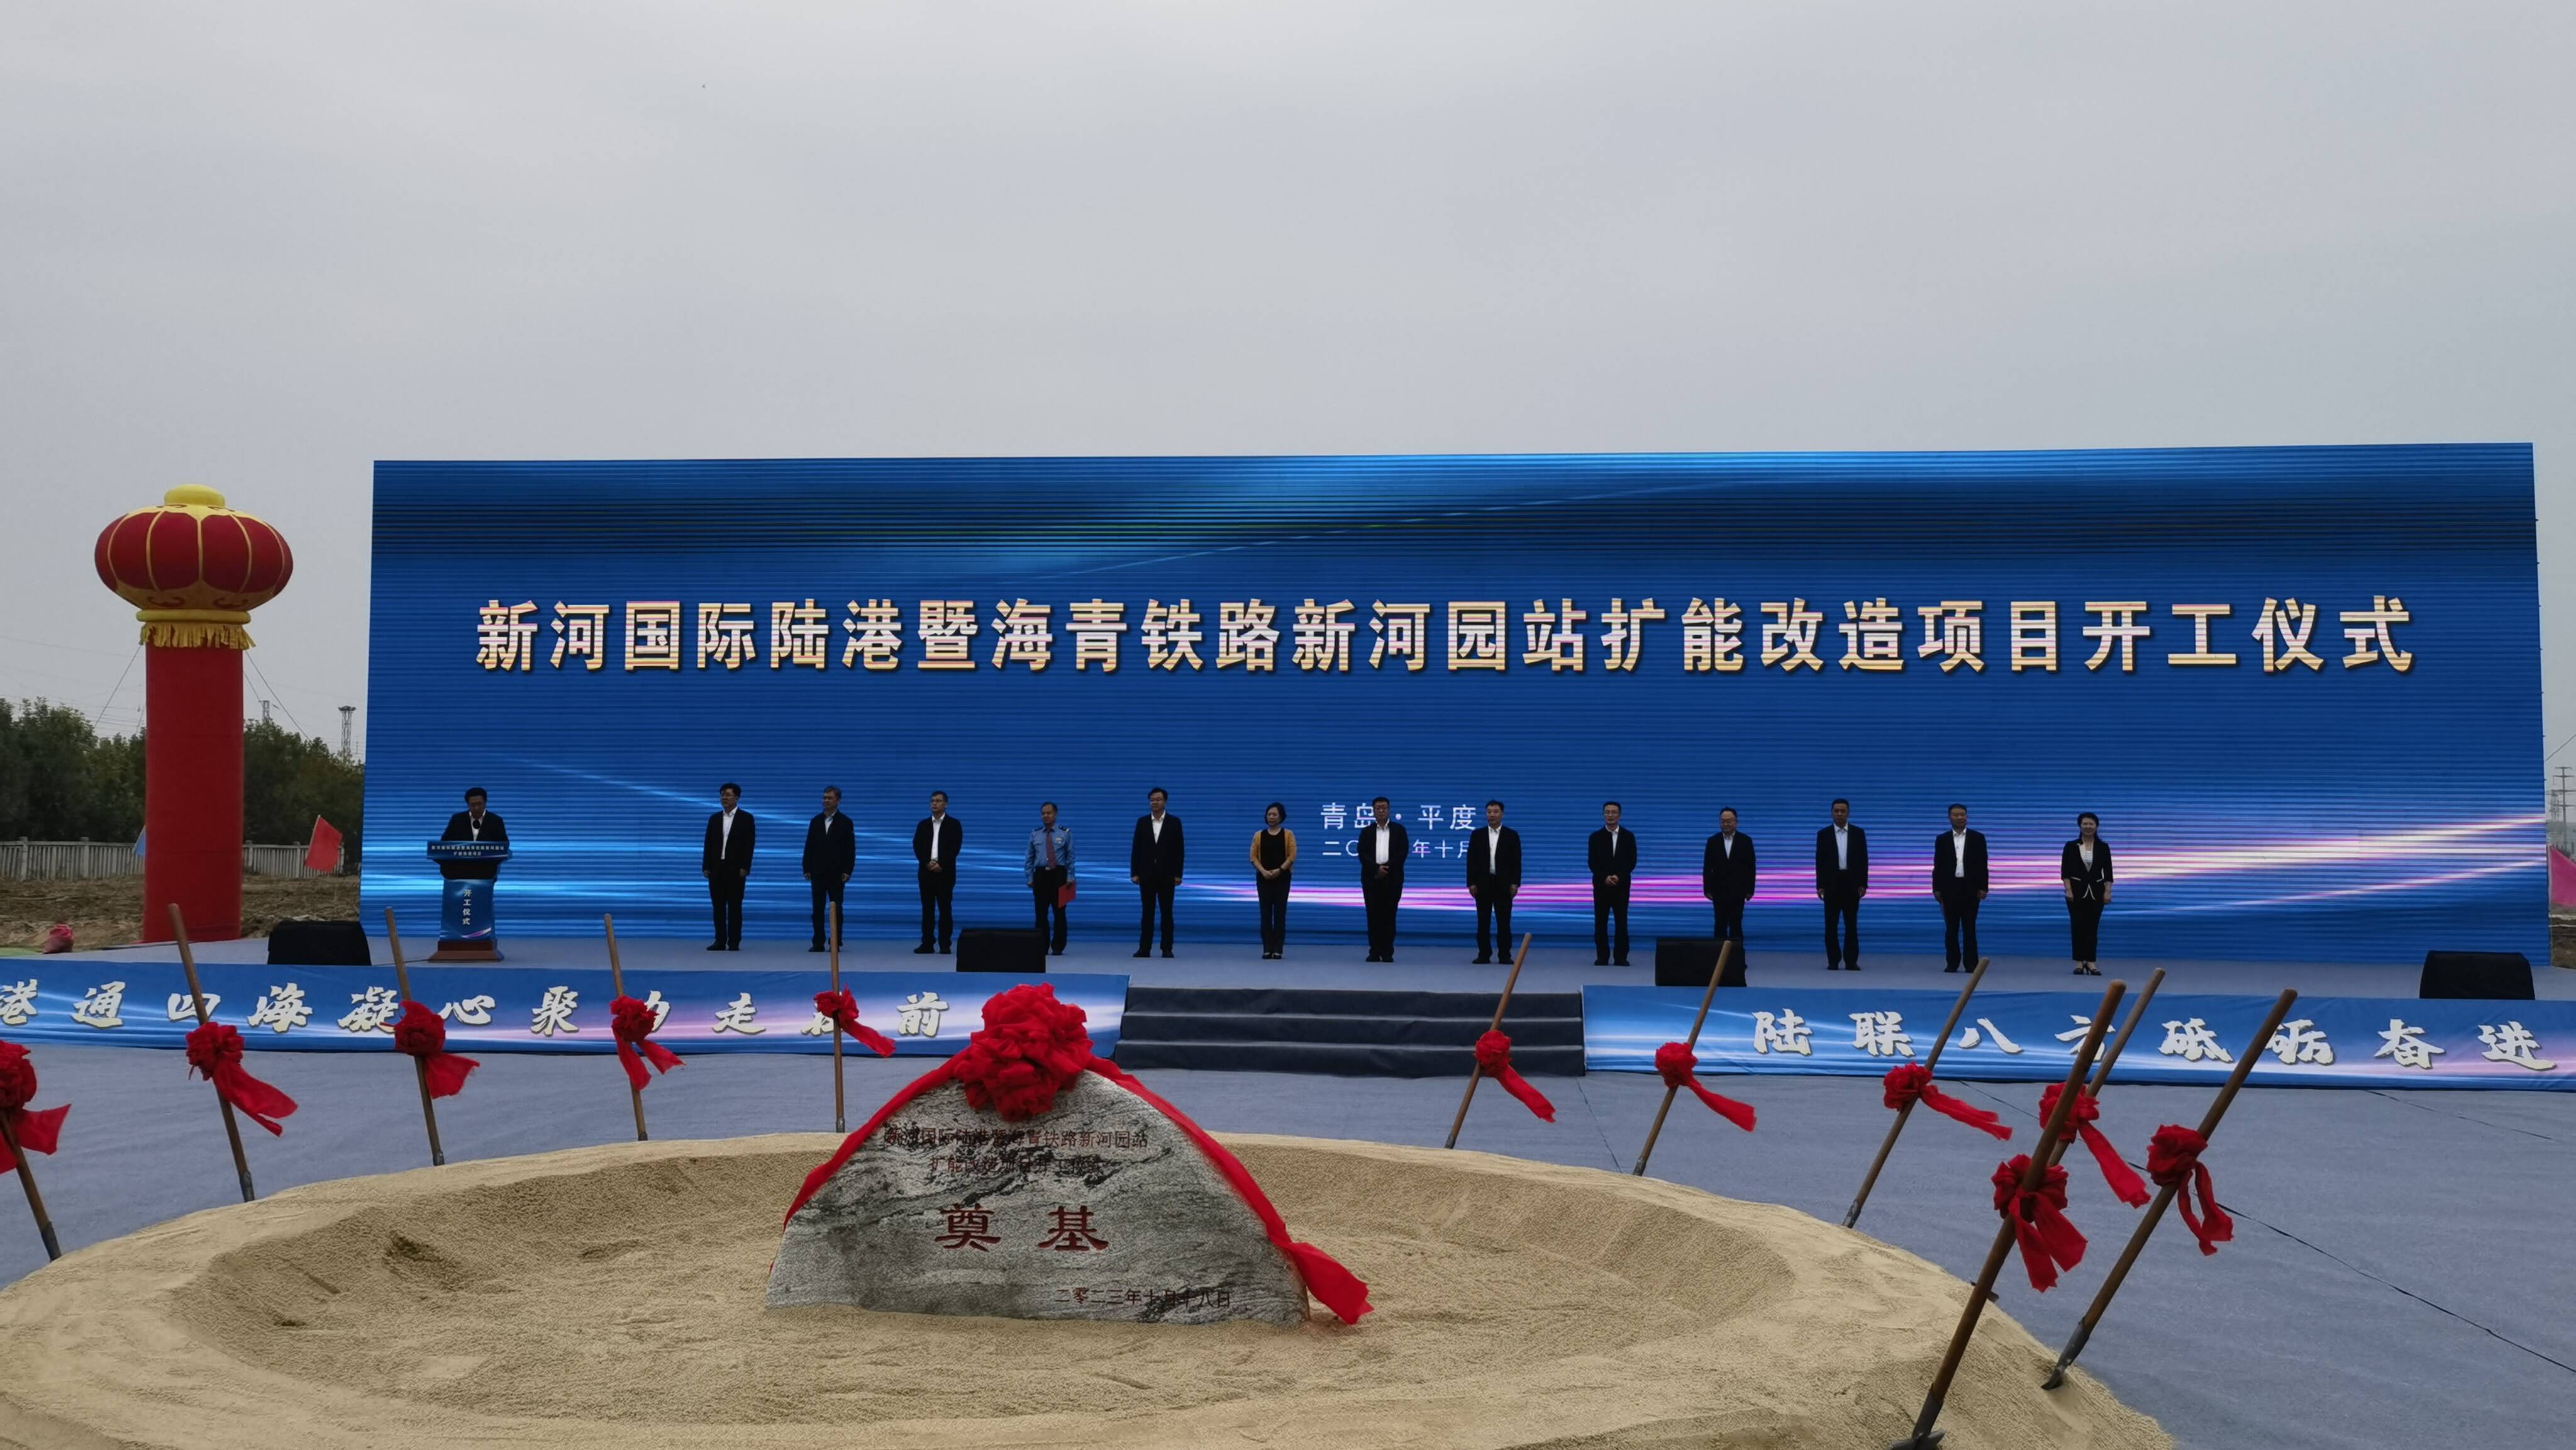 新河国际陆港暨海青铁路新河园站扩能改造工程开工建设